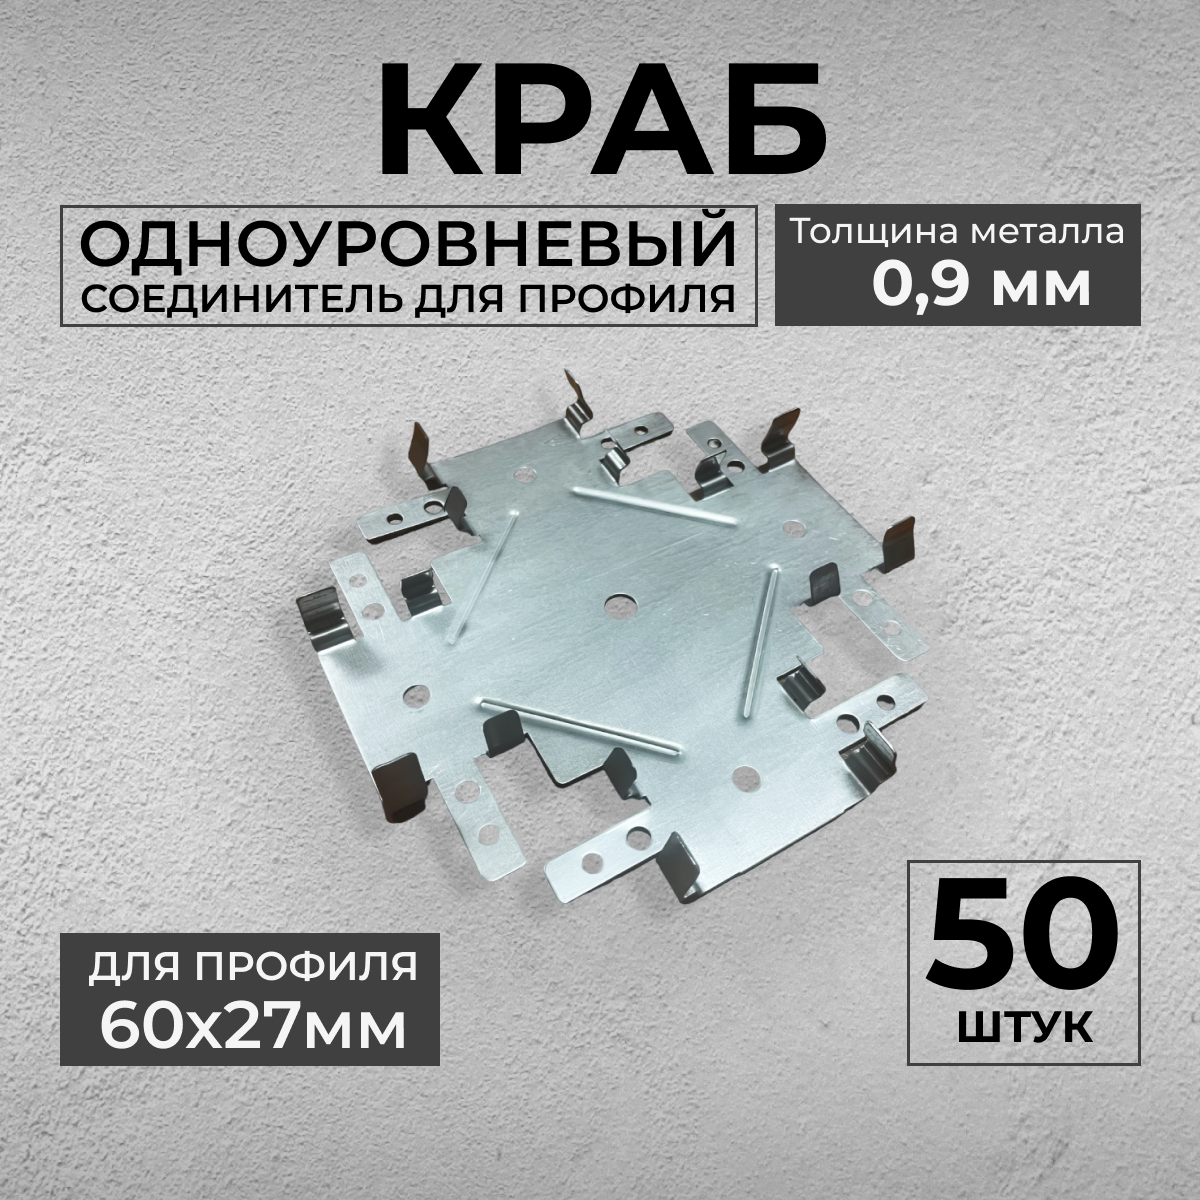 Краб Одноуровневый (50шт) соединитель для ПП 60х27 (толщина 09мм)